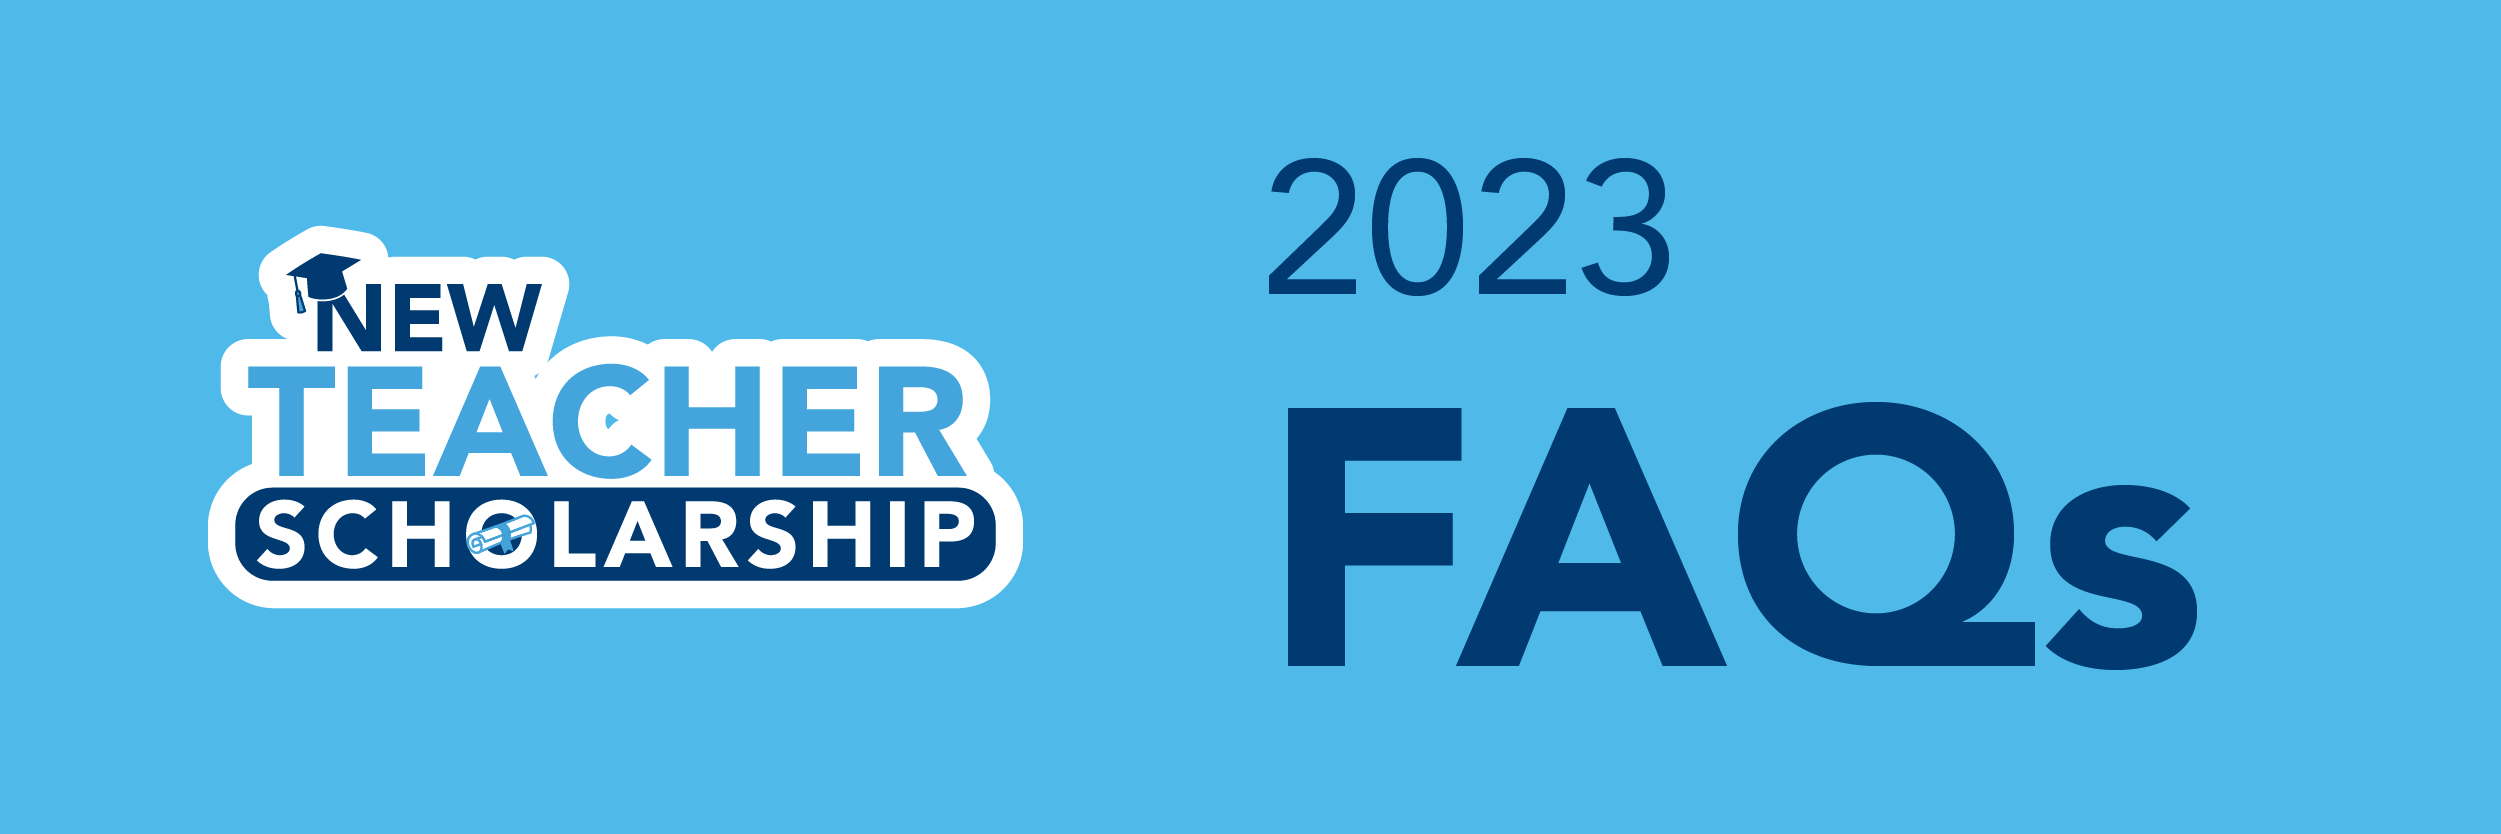 New Teacher Scholarship 2023 FAQs